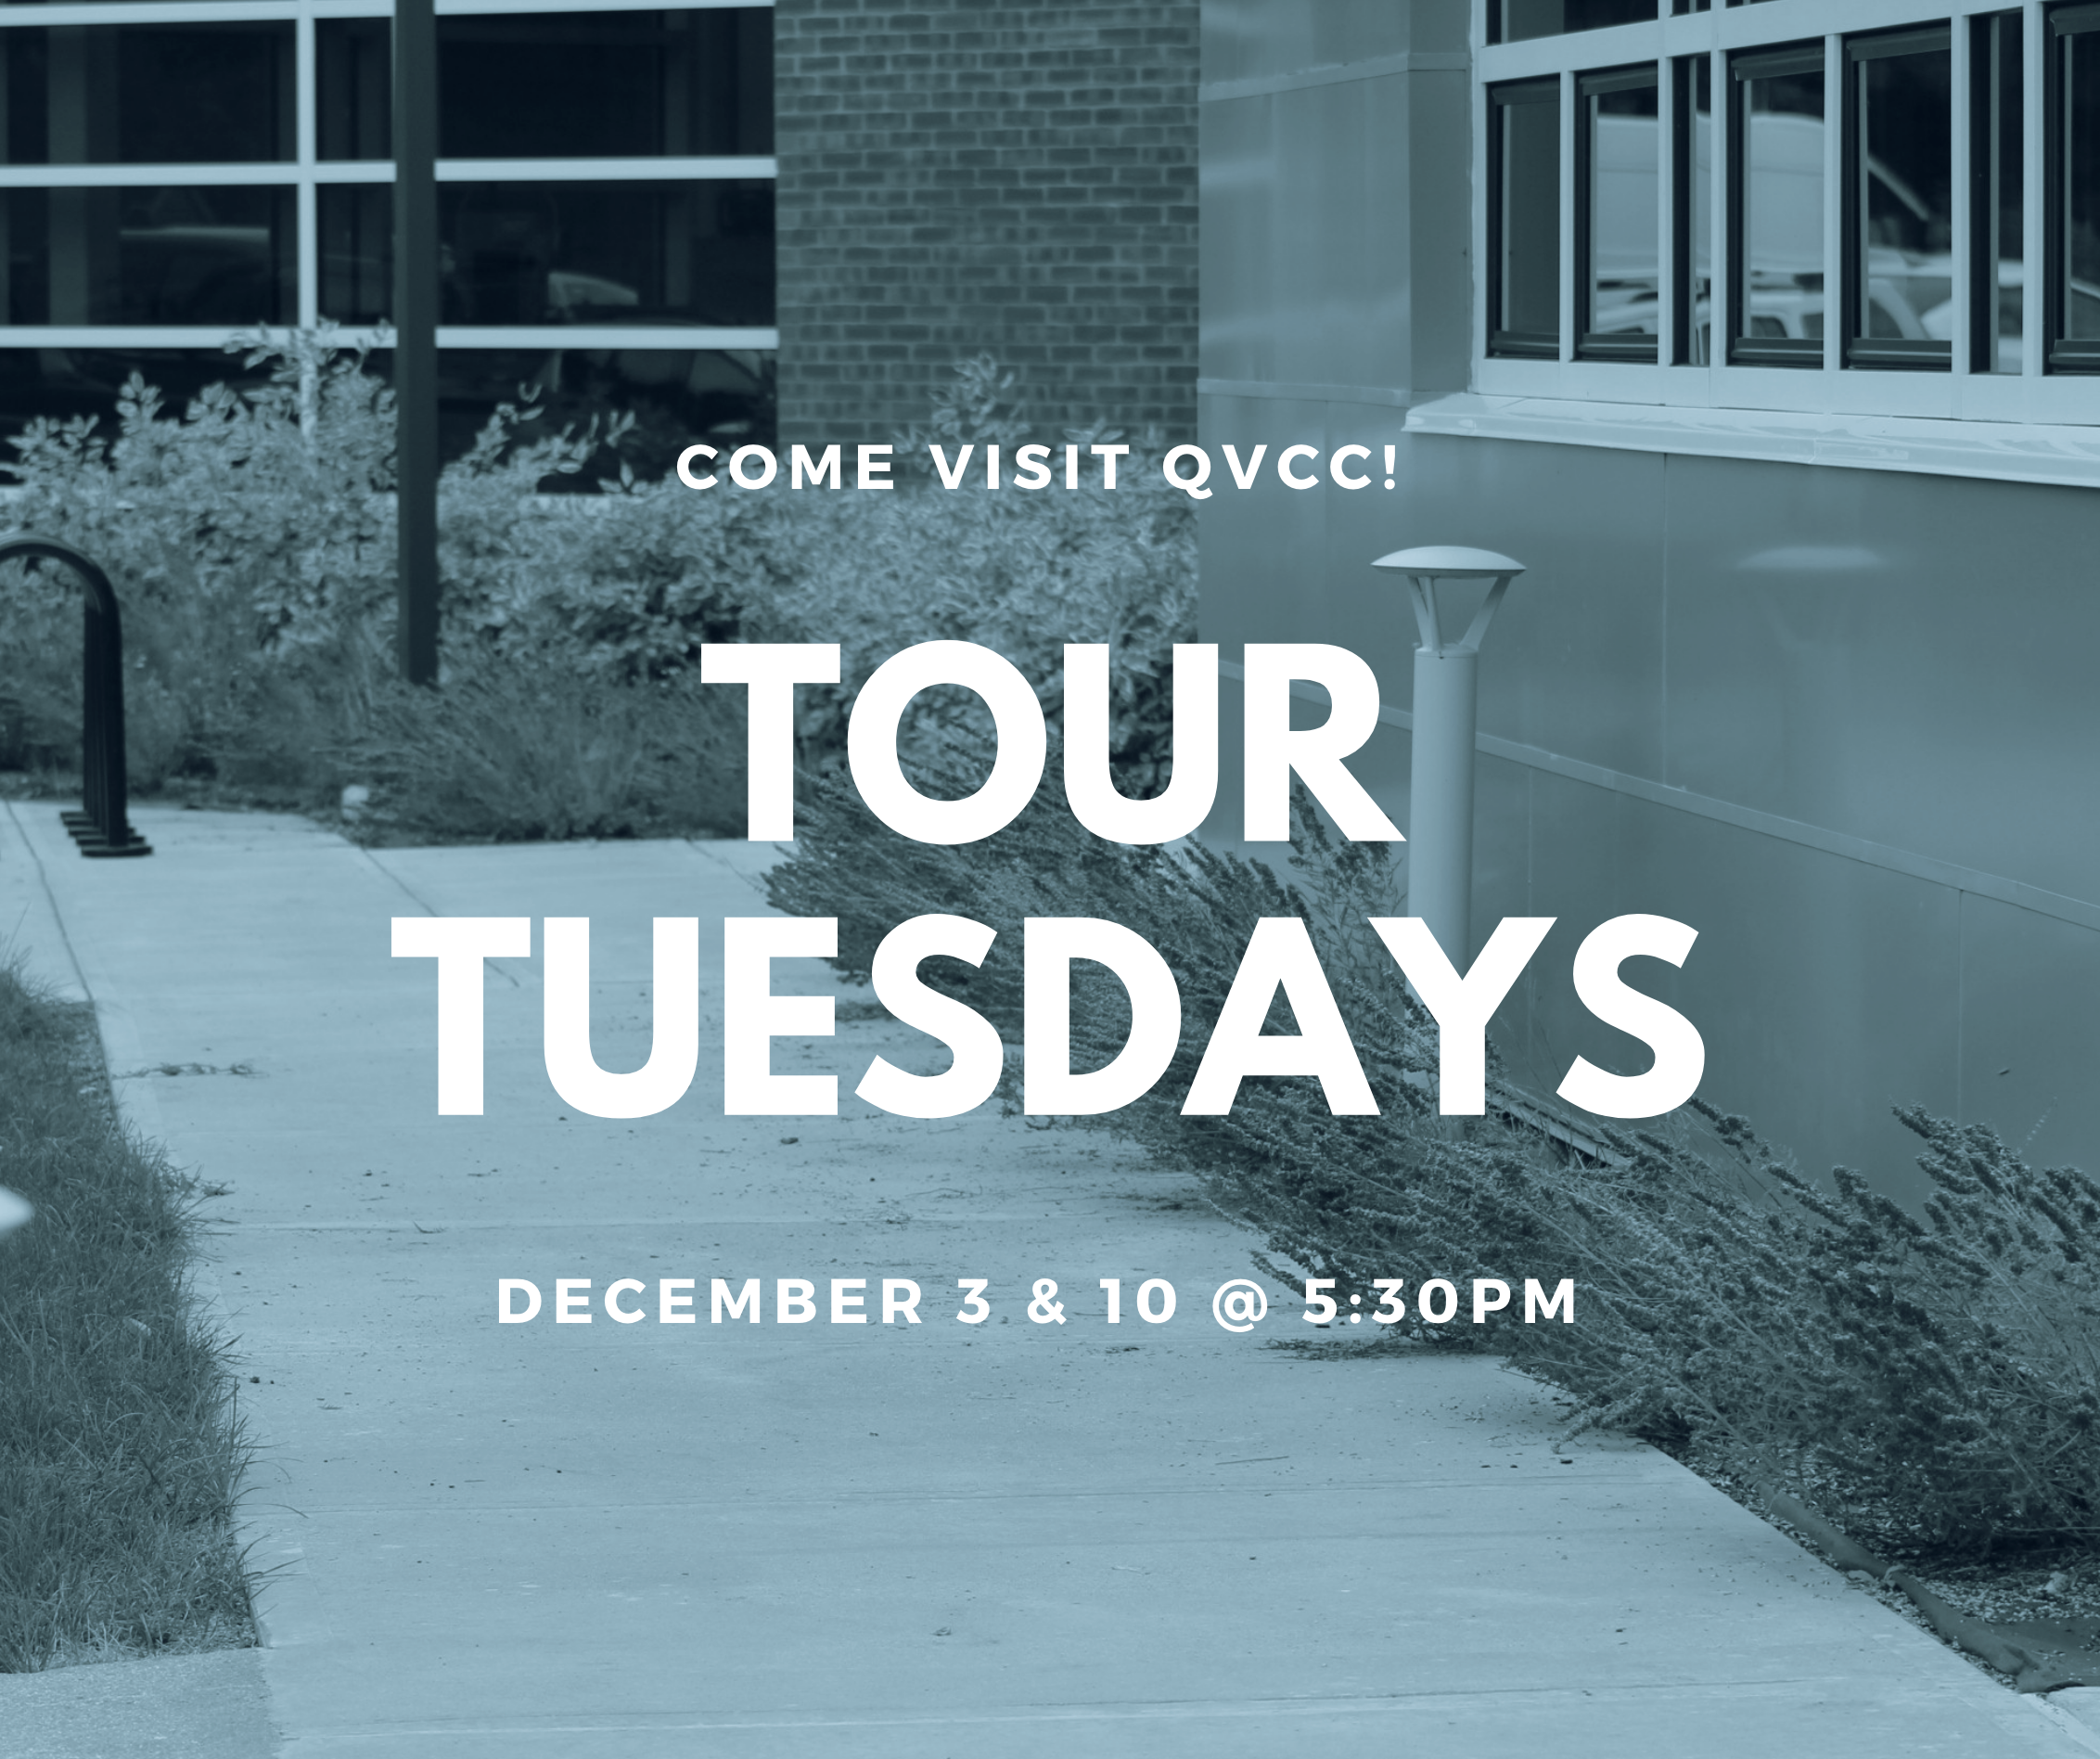 QVCC Tour Tuesdays